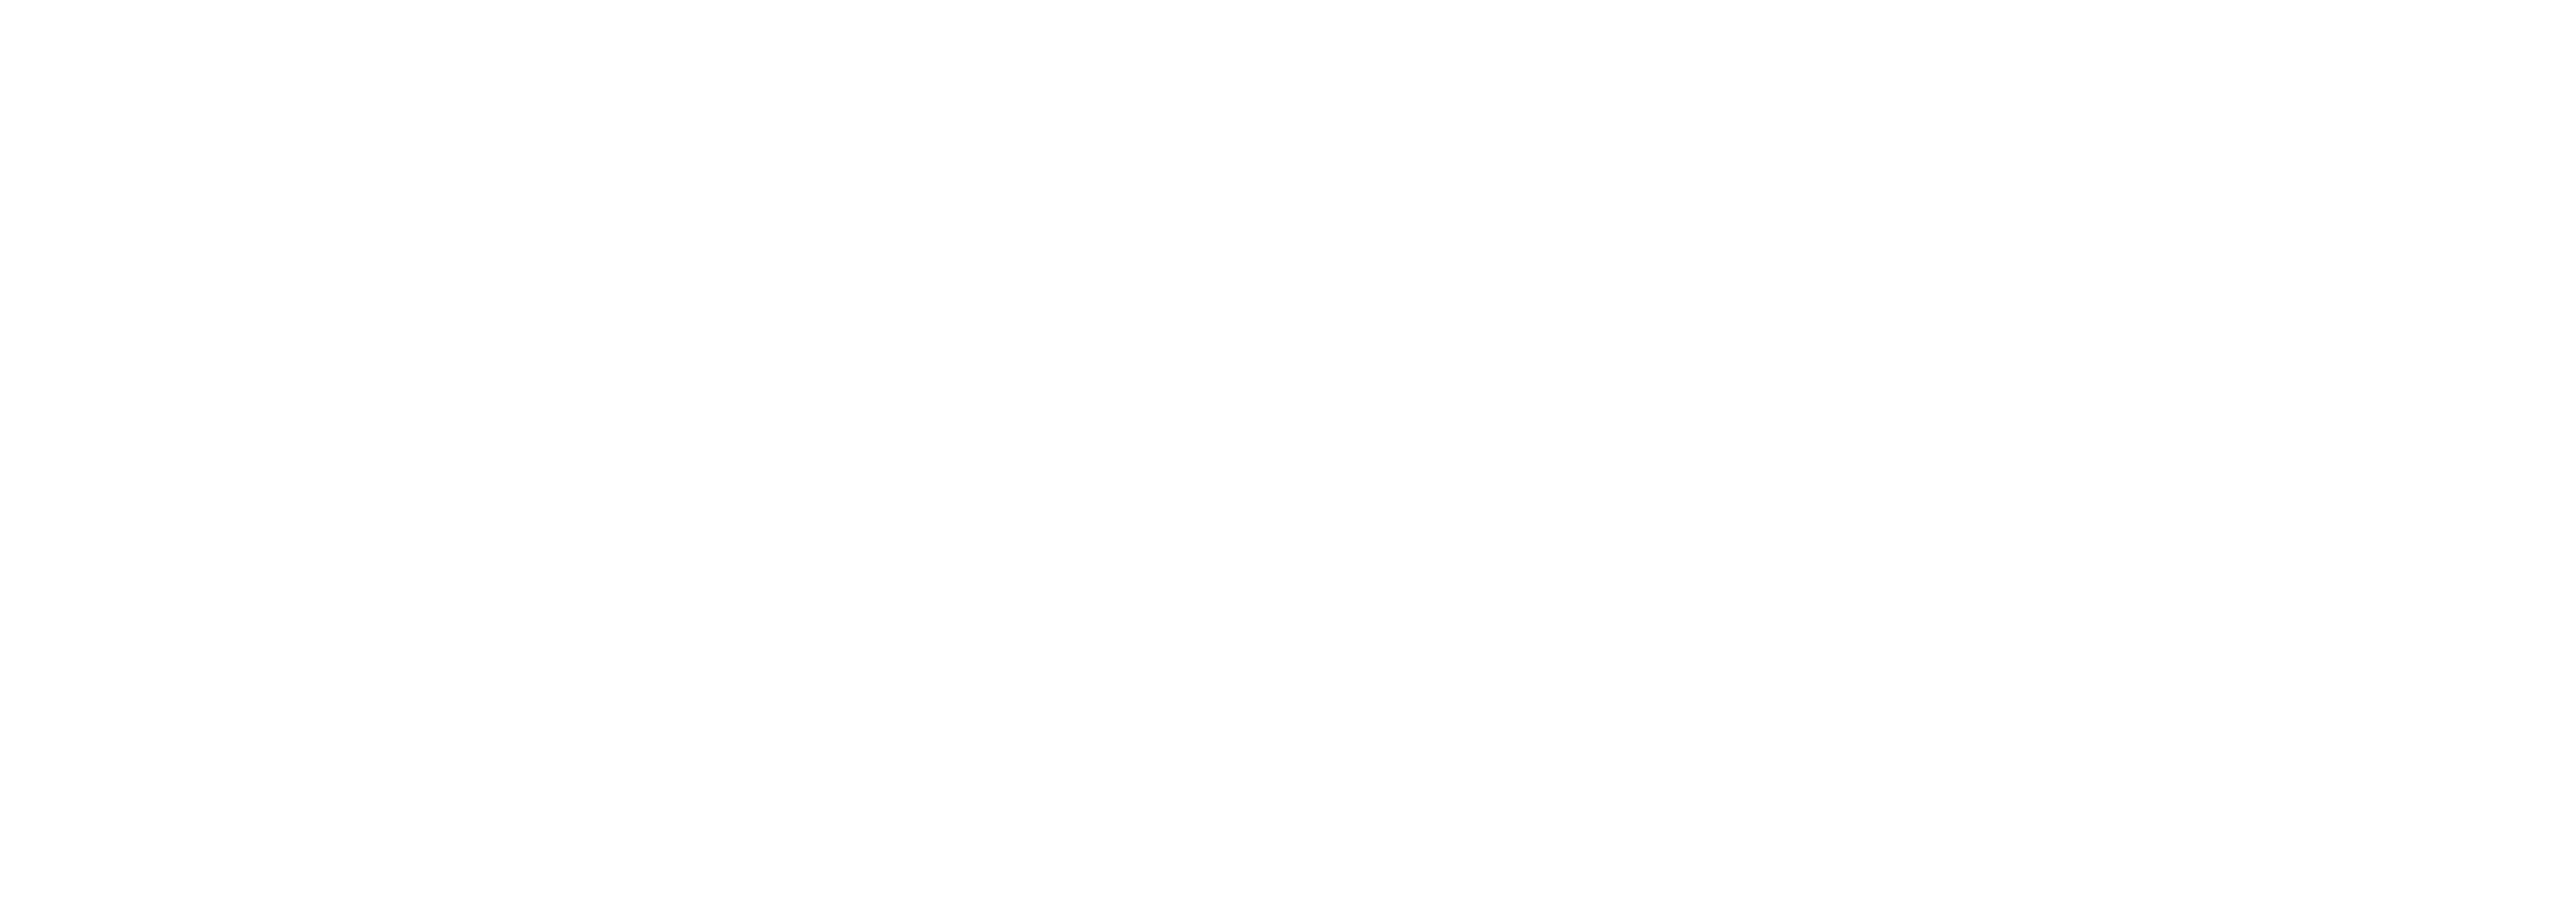 S.T.A.L.K.E.R.: Area of Decay